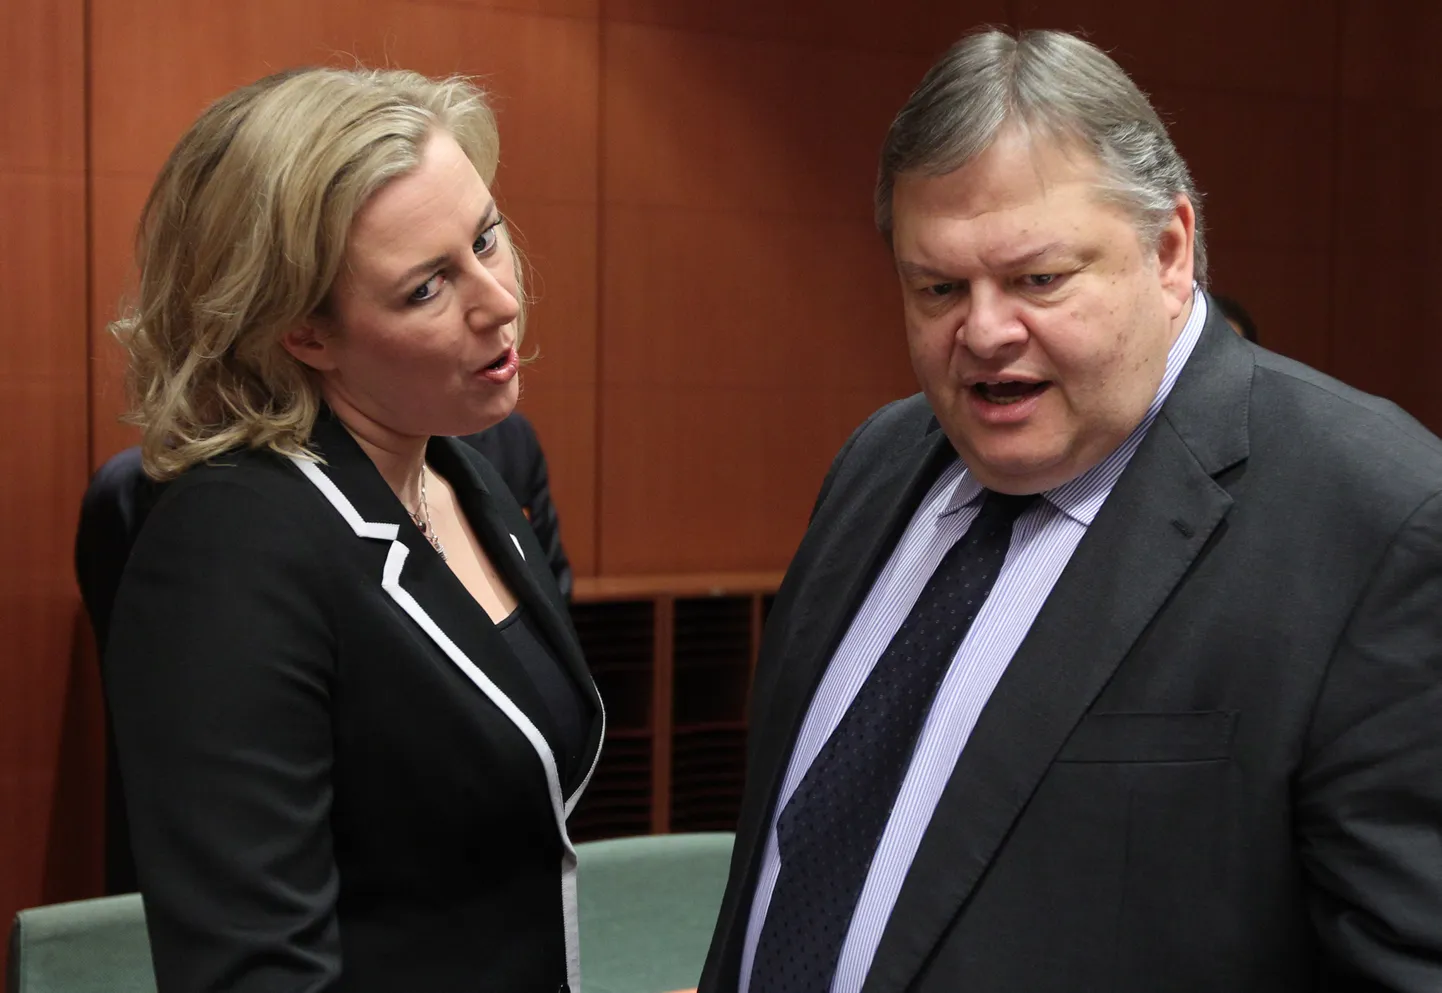 Kreeka rahandusminister Evangelos Venizelos (paremal) vestlemas Soome kolleegi Jutta Urpilaineniga.